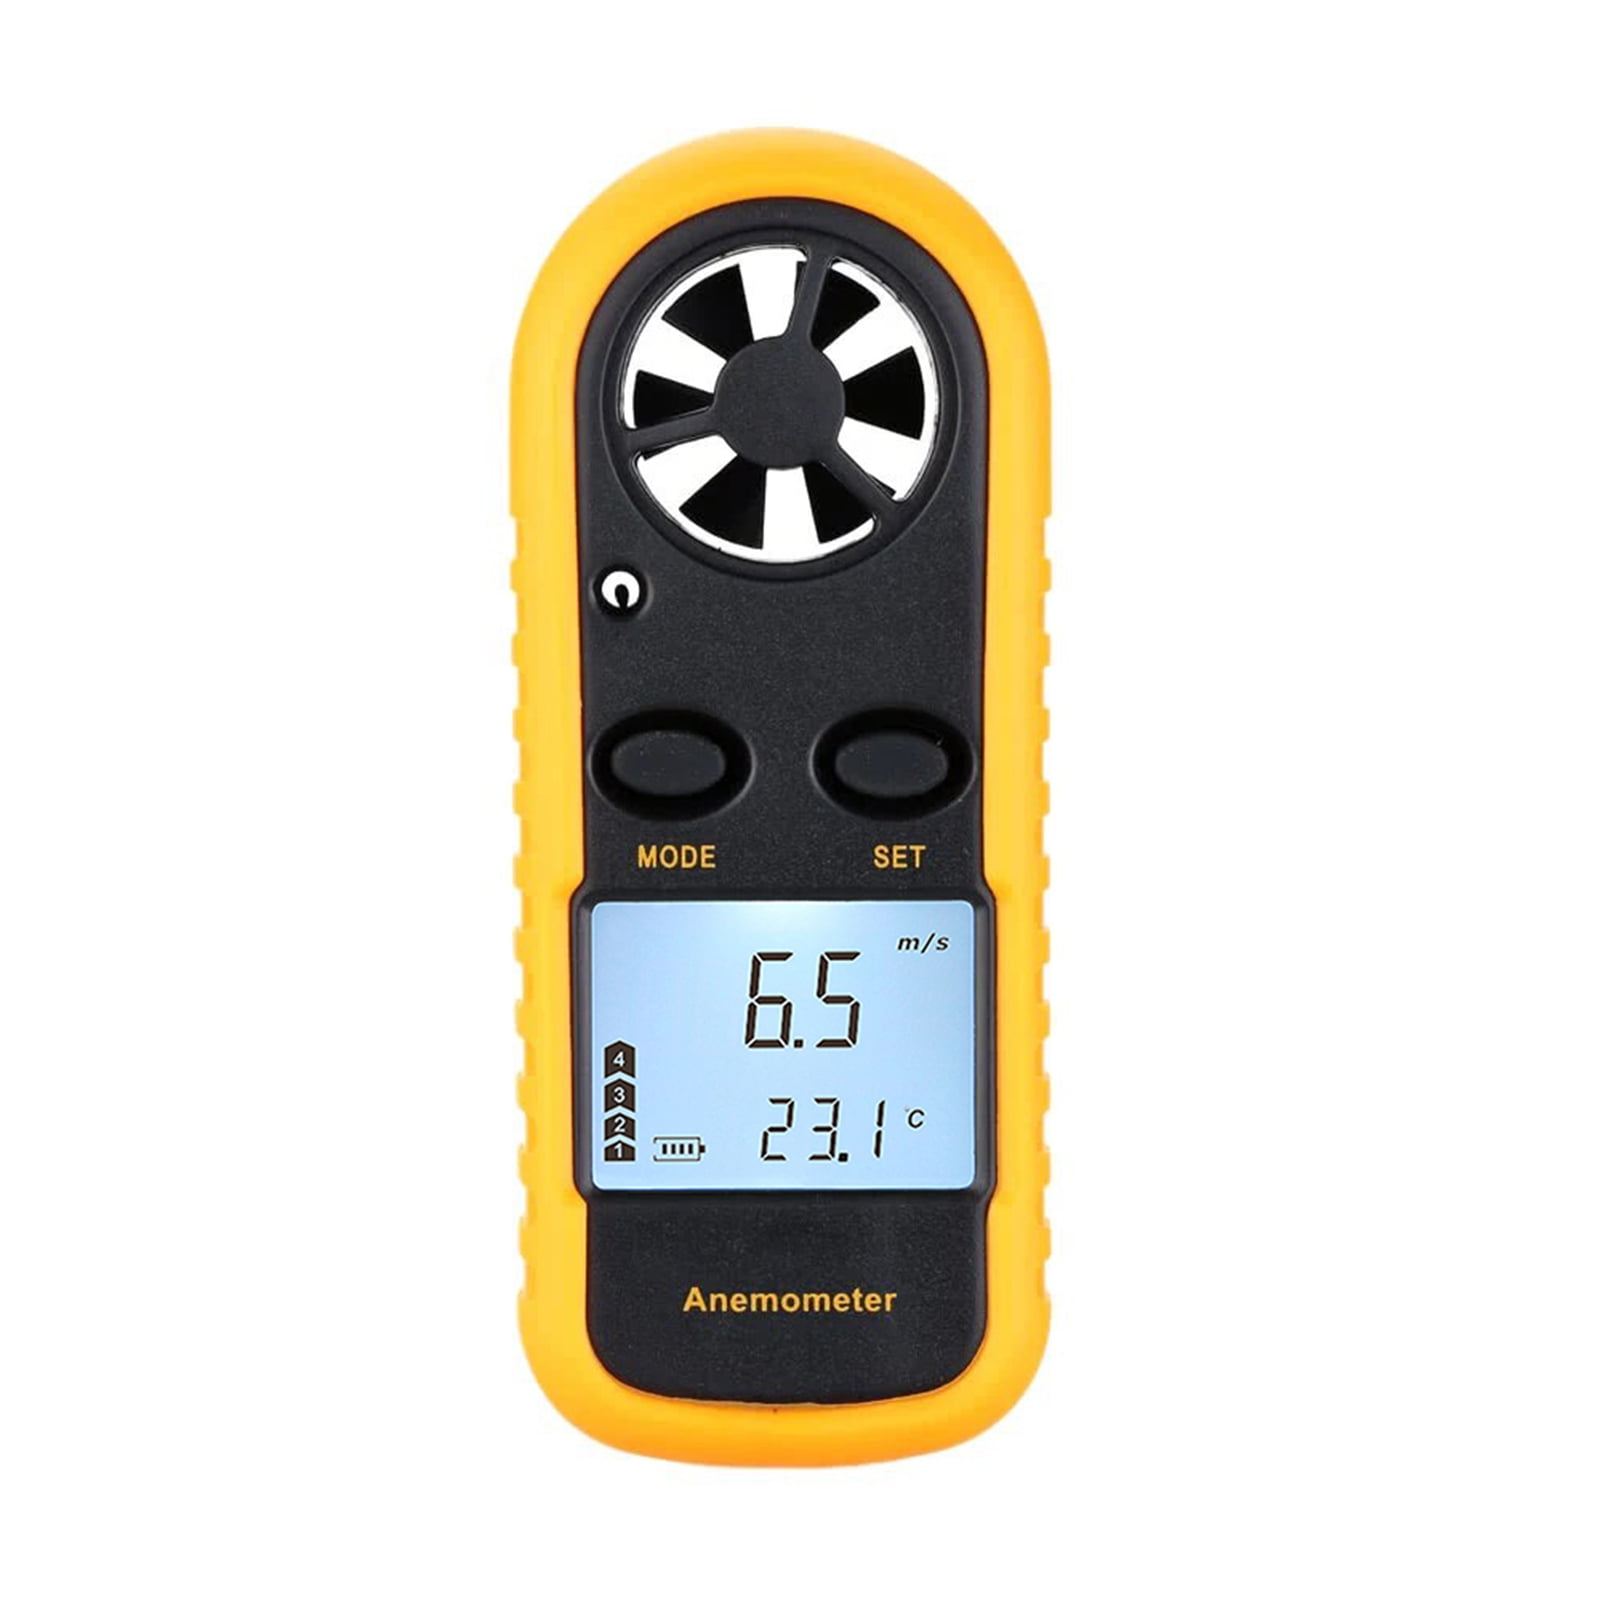 LCD Anemometer Digital Wind Speed Gauge Meter Handheld Portable Thermometer Tool 